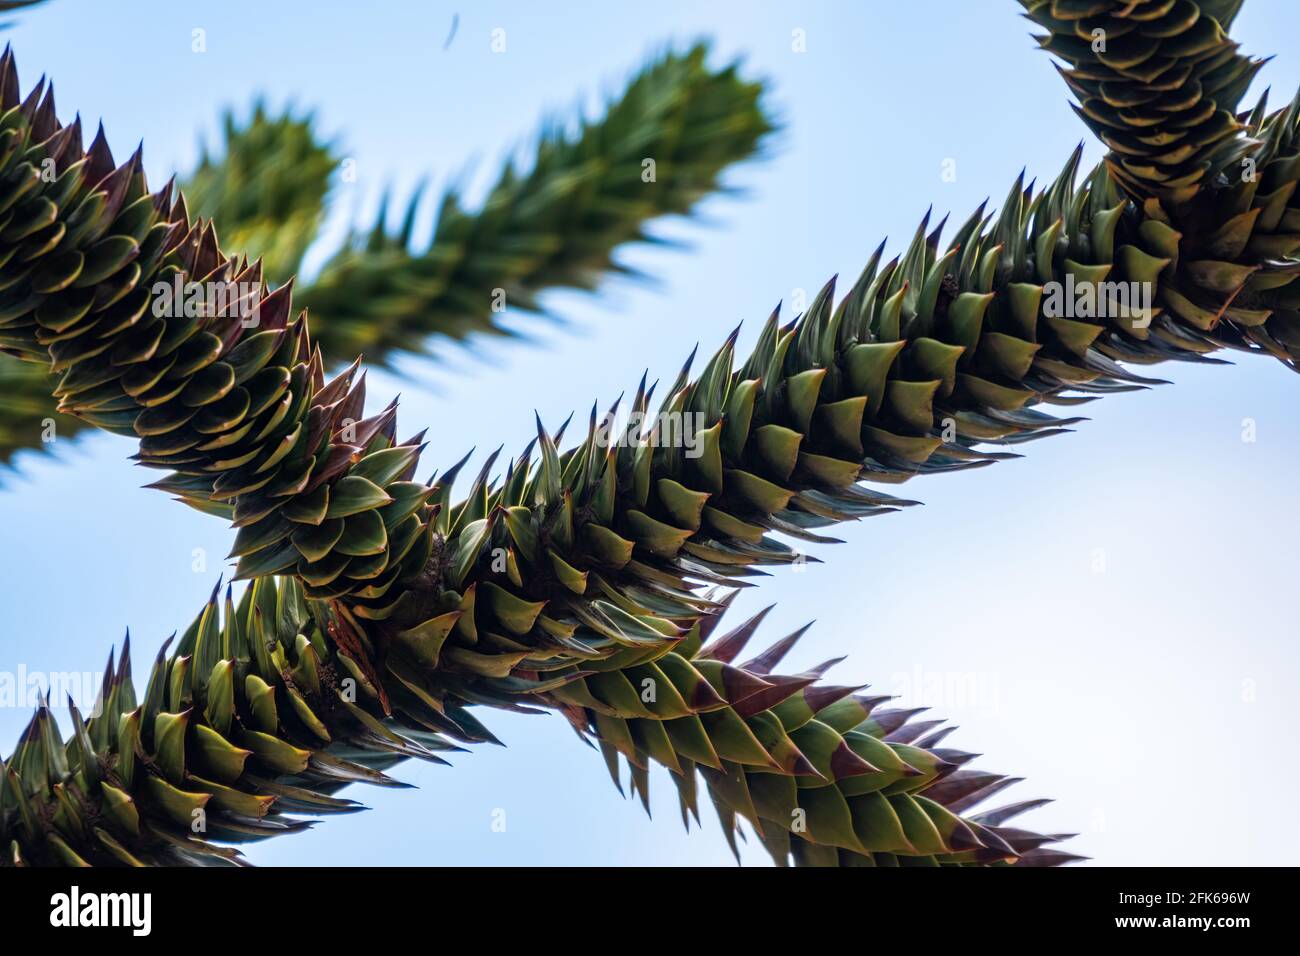 Agujas de árbol siempreverde Araucaria araucana, comúnmente llamado el Árbol de Puzzle de Monos, Árbol de Cola de Monos, Pewen o Pino Chileno Foto de stock